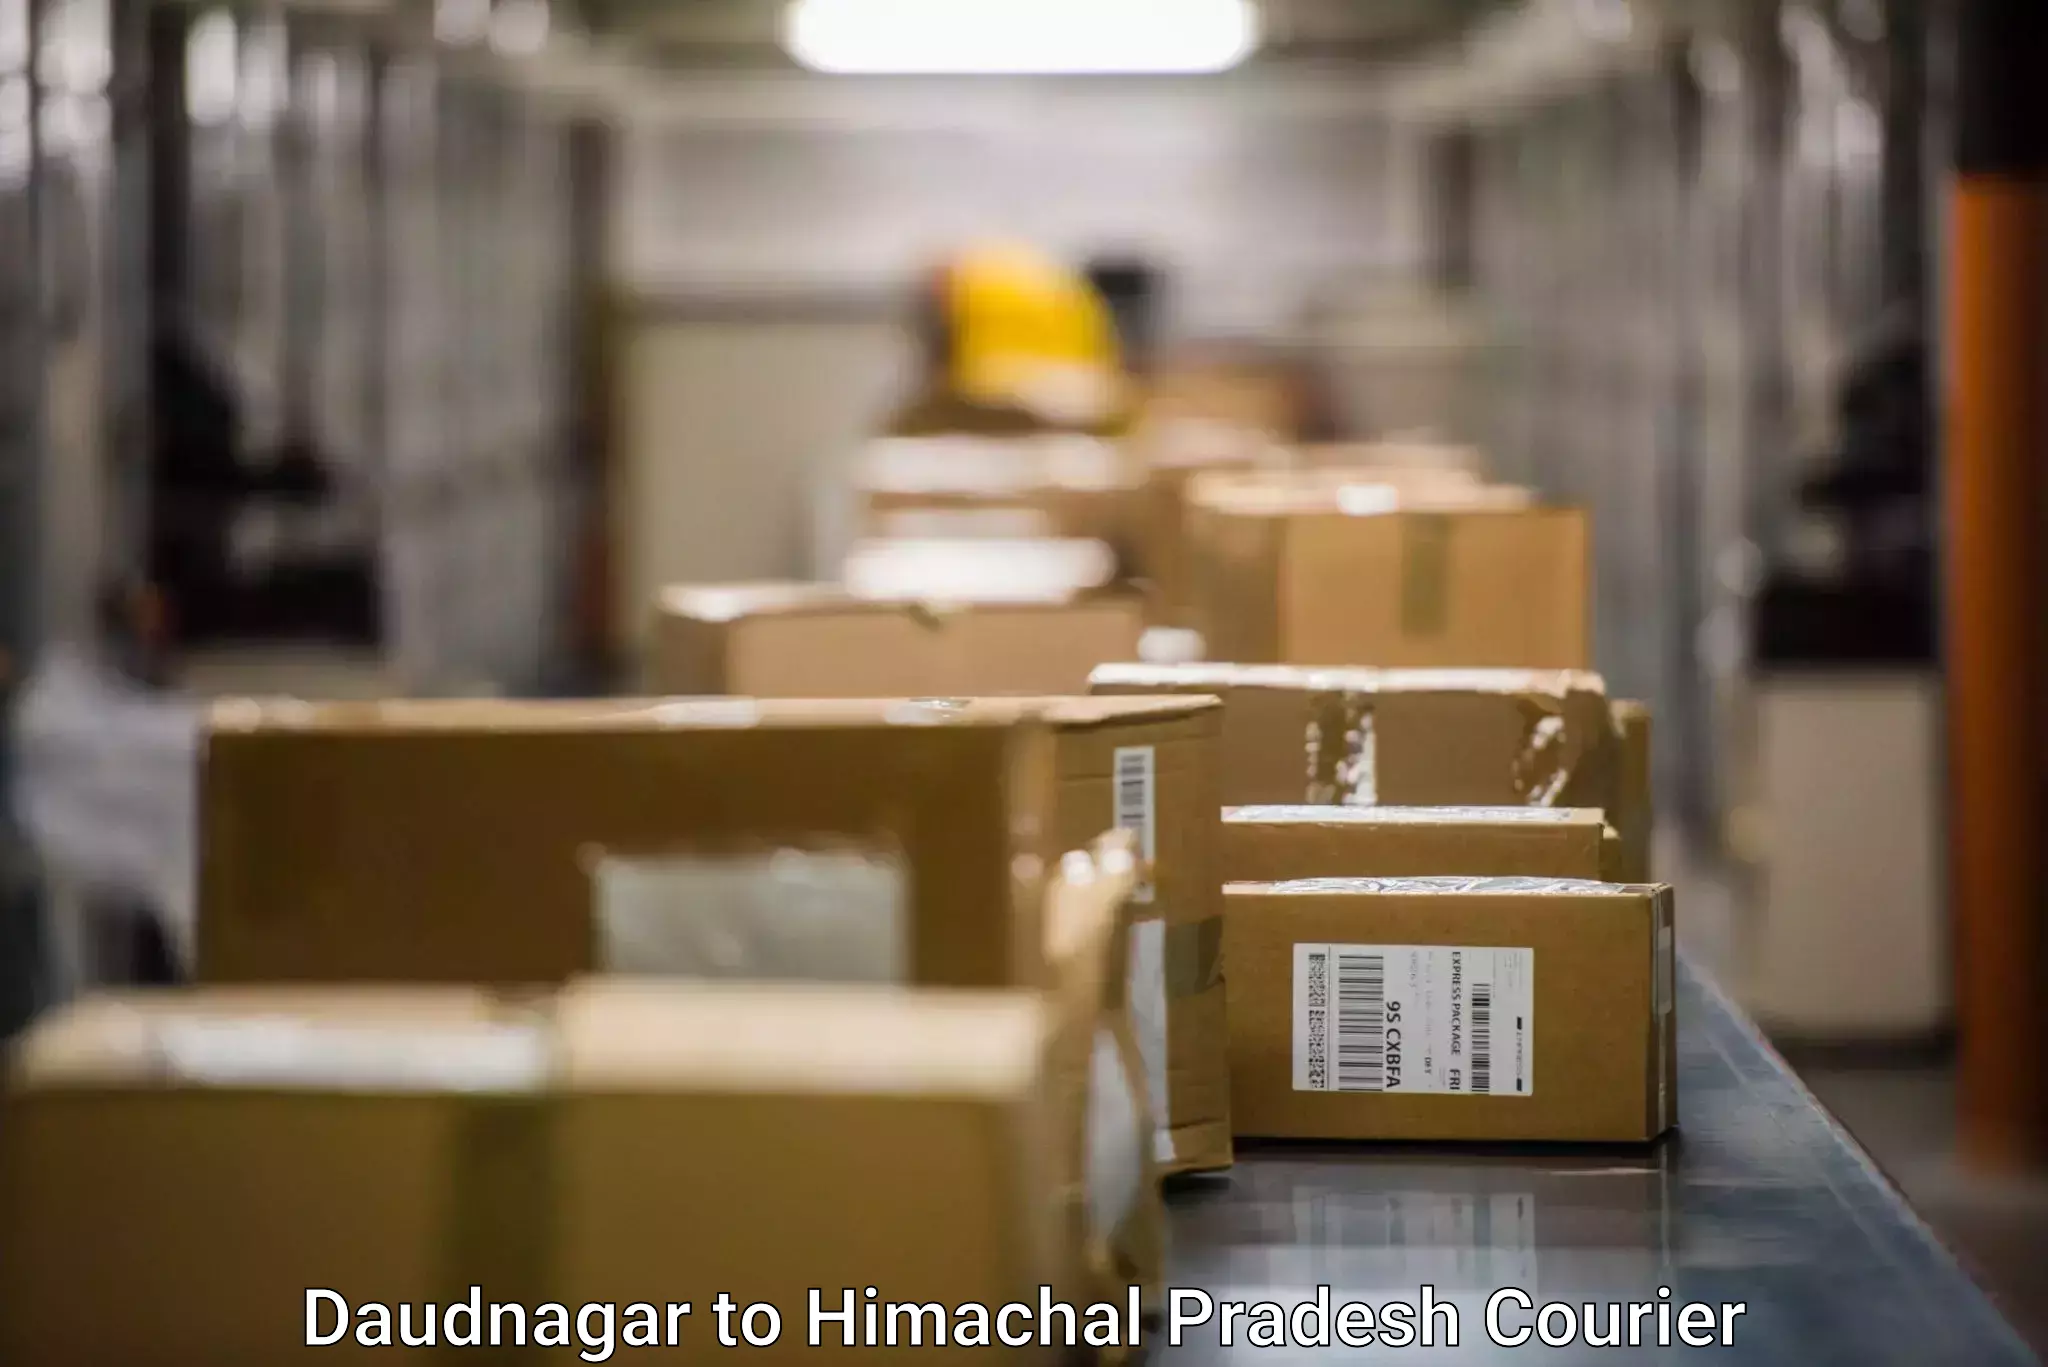 Efficient parcel service Daudnagar to Salouni